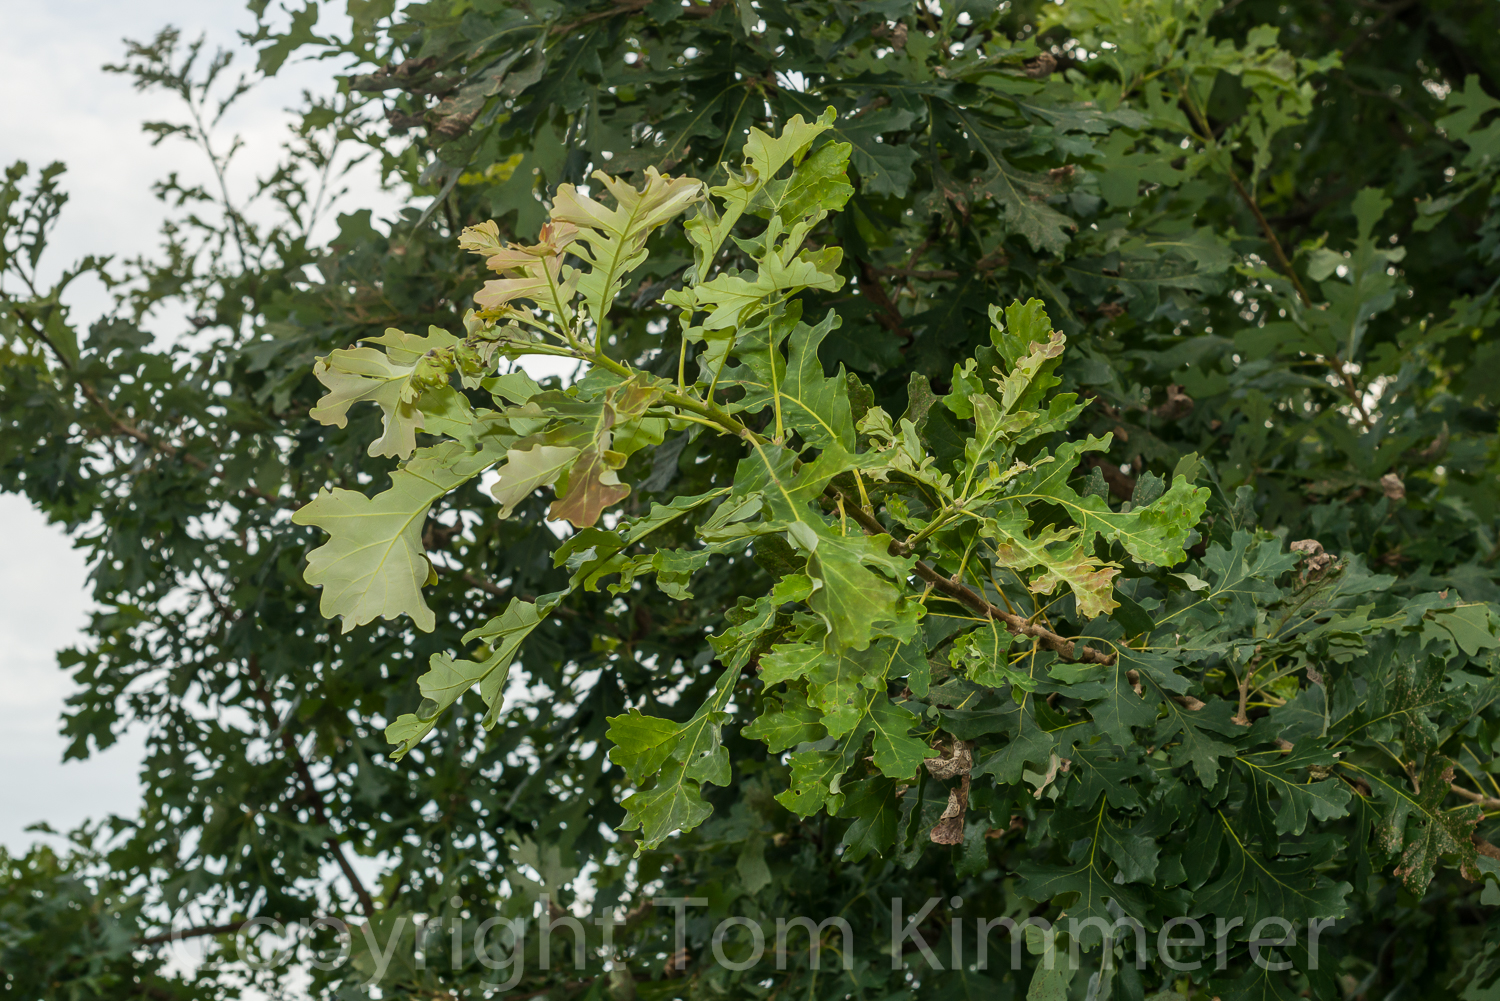 September flush of growth in bur oak